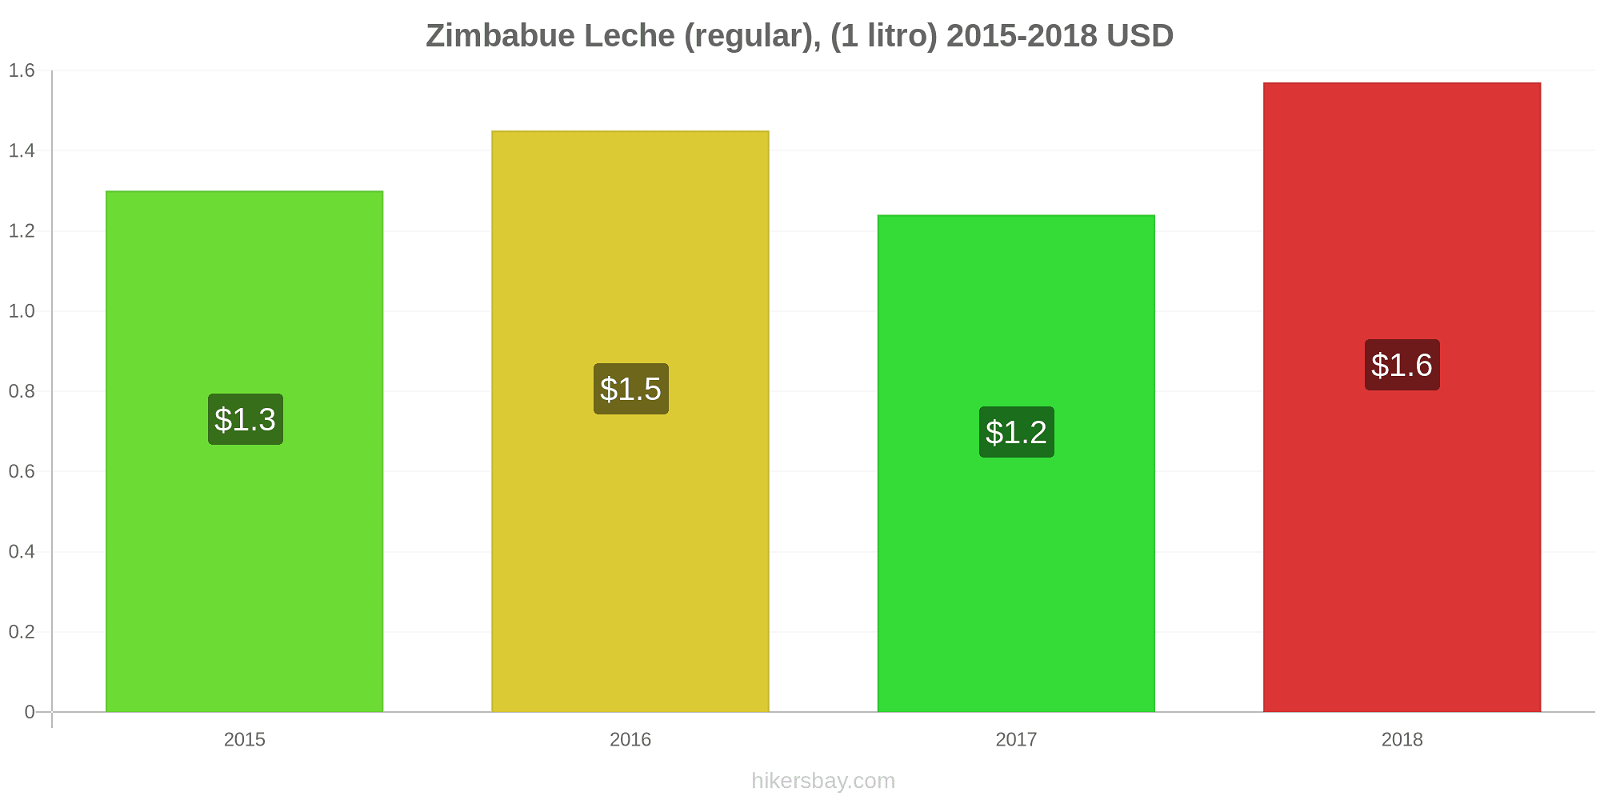 Zimbabue cambios de precios Leche (Regular), (1 litro) hikersbay.com